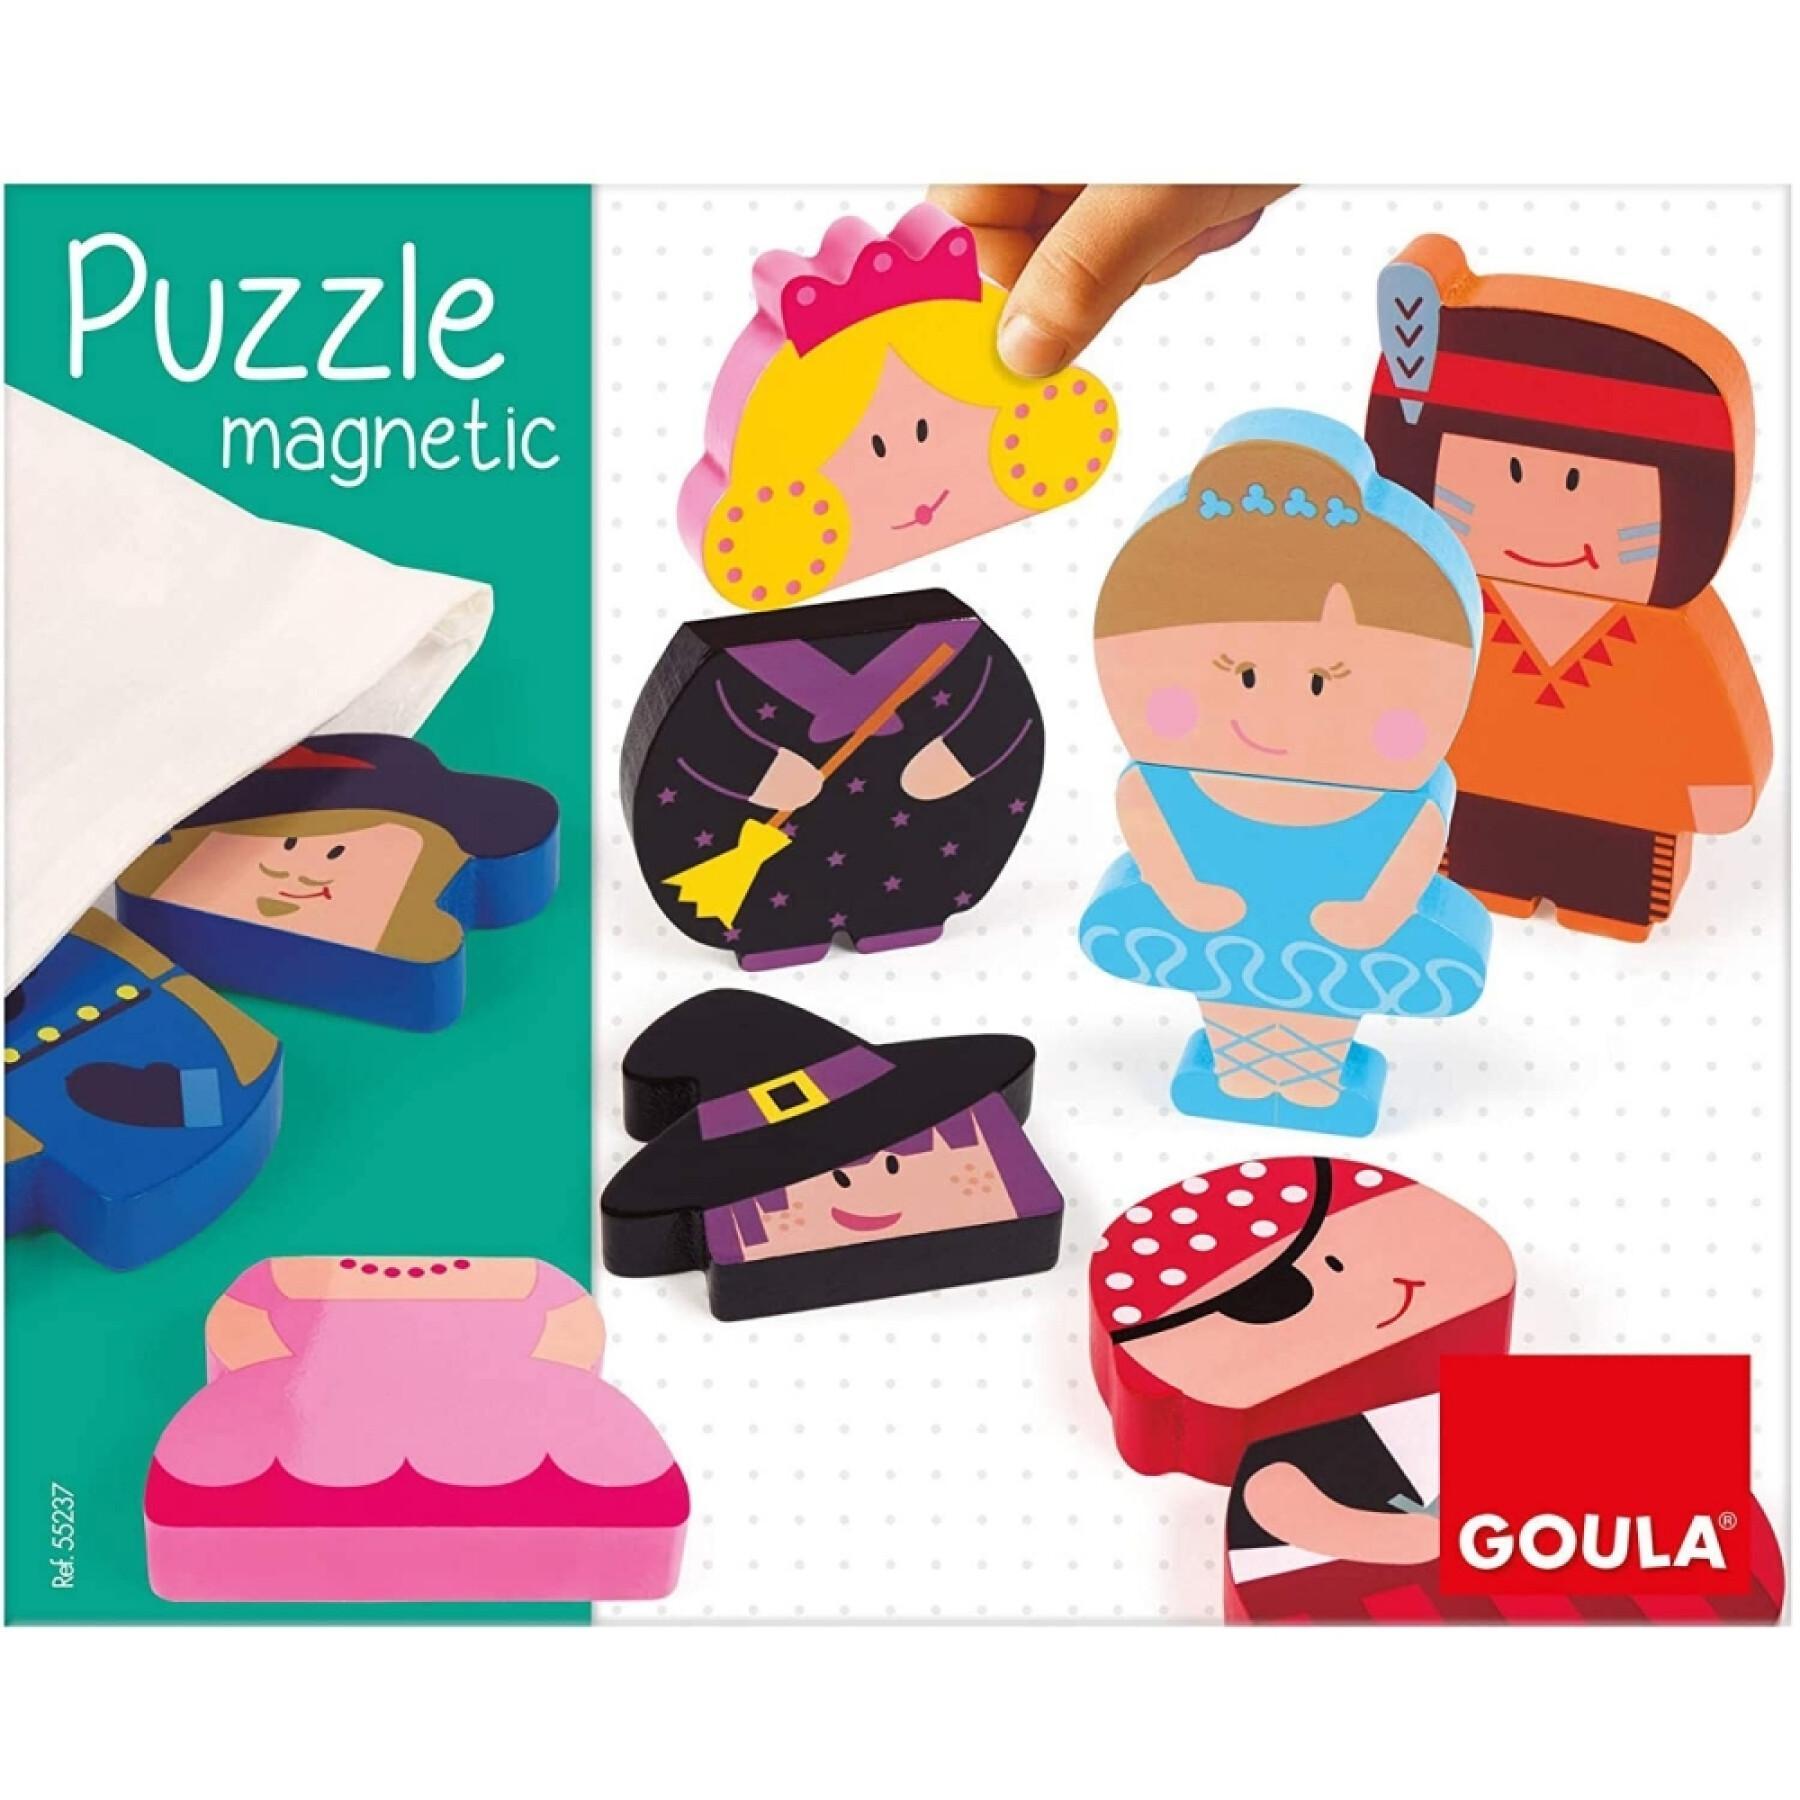 Puzzle magnético de personajes Goula